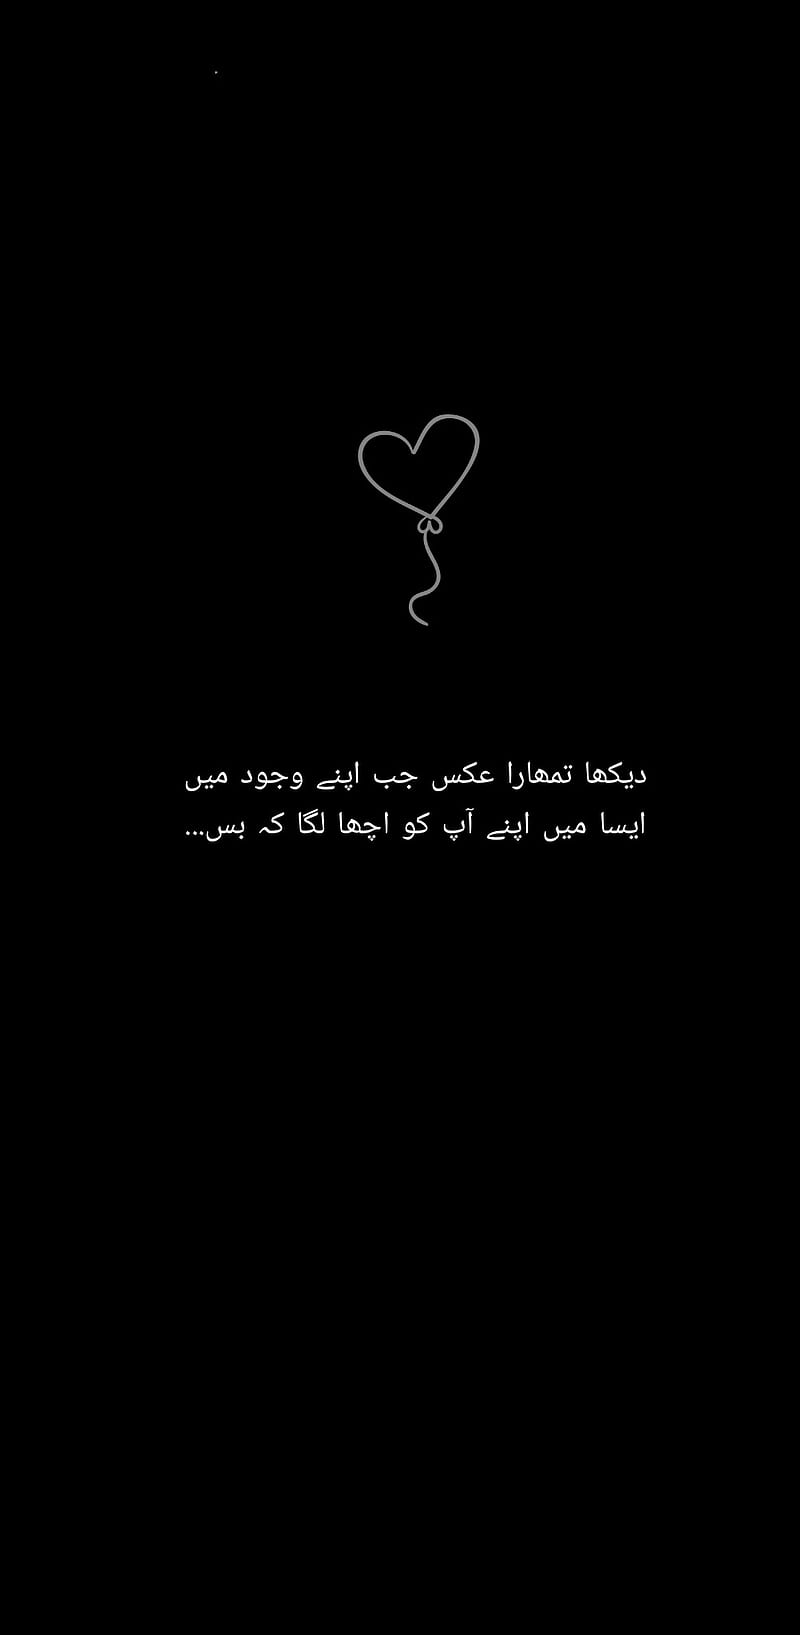 Love quote, love, quote, sayings, urdu, HD phone wallpaper | Peakpx